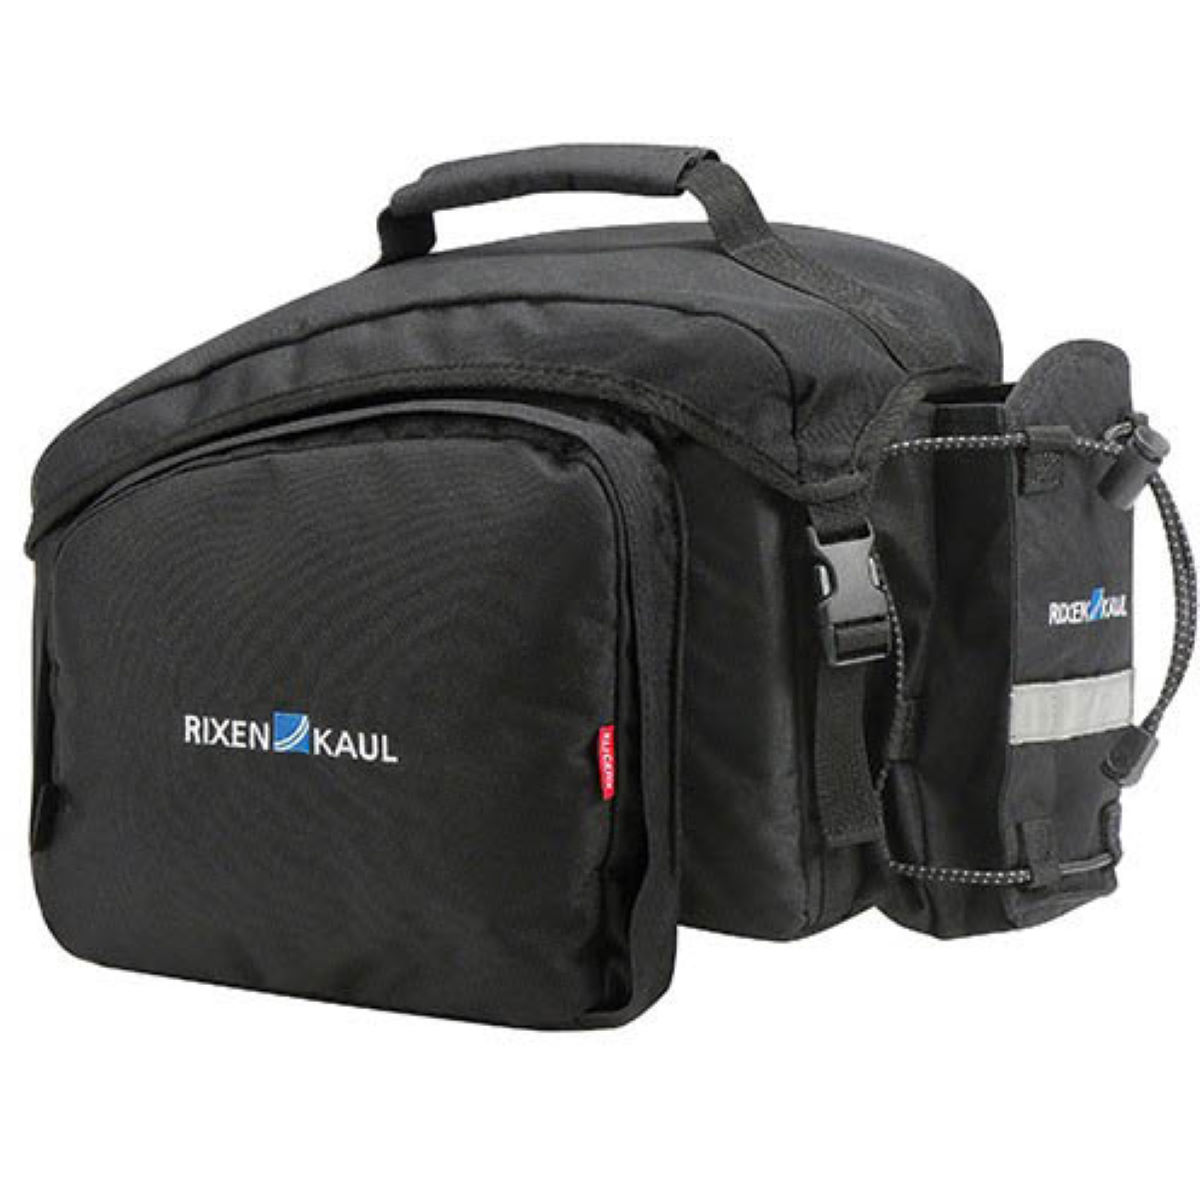 Rixen Kaul Rackpack 1 Plus Bag for Racktime Rack - Alforjas